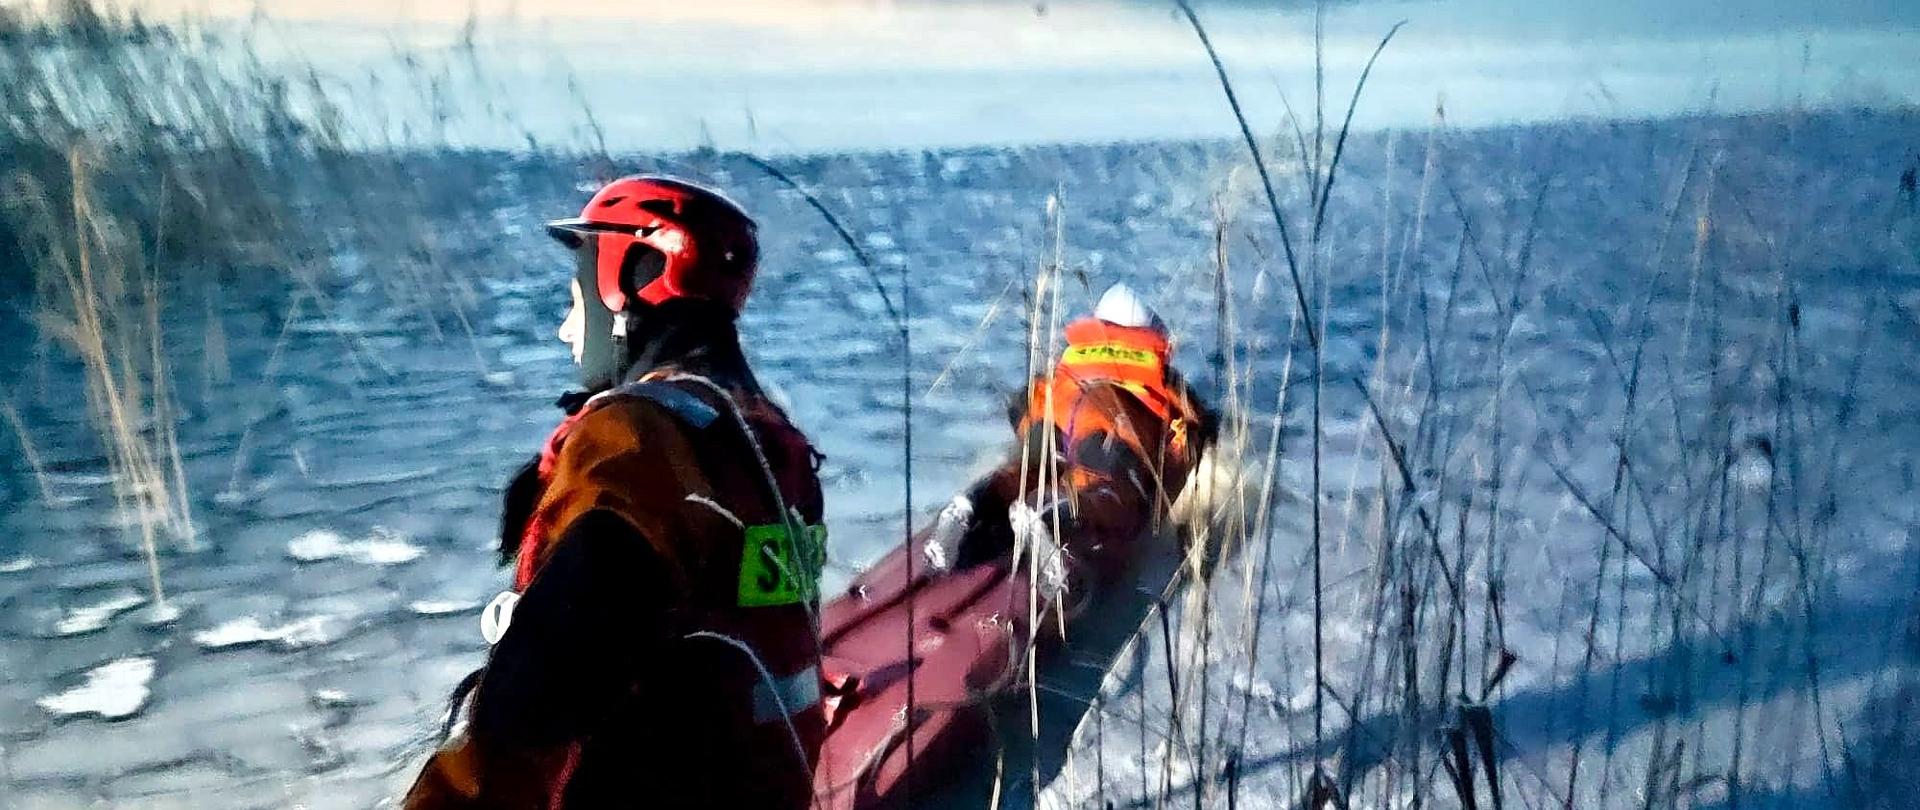 Zdjęcie przedstawia strażaków, którzy za pomocą sań lodowych pokonują zamarzniętą taflę jeziora. Na saniach leży strażak w stroju do pracy w wodzie, drugi go asekuruję. W tle widać zamarznięte jezioro, trzciny.